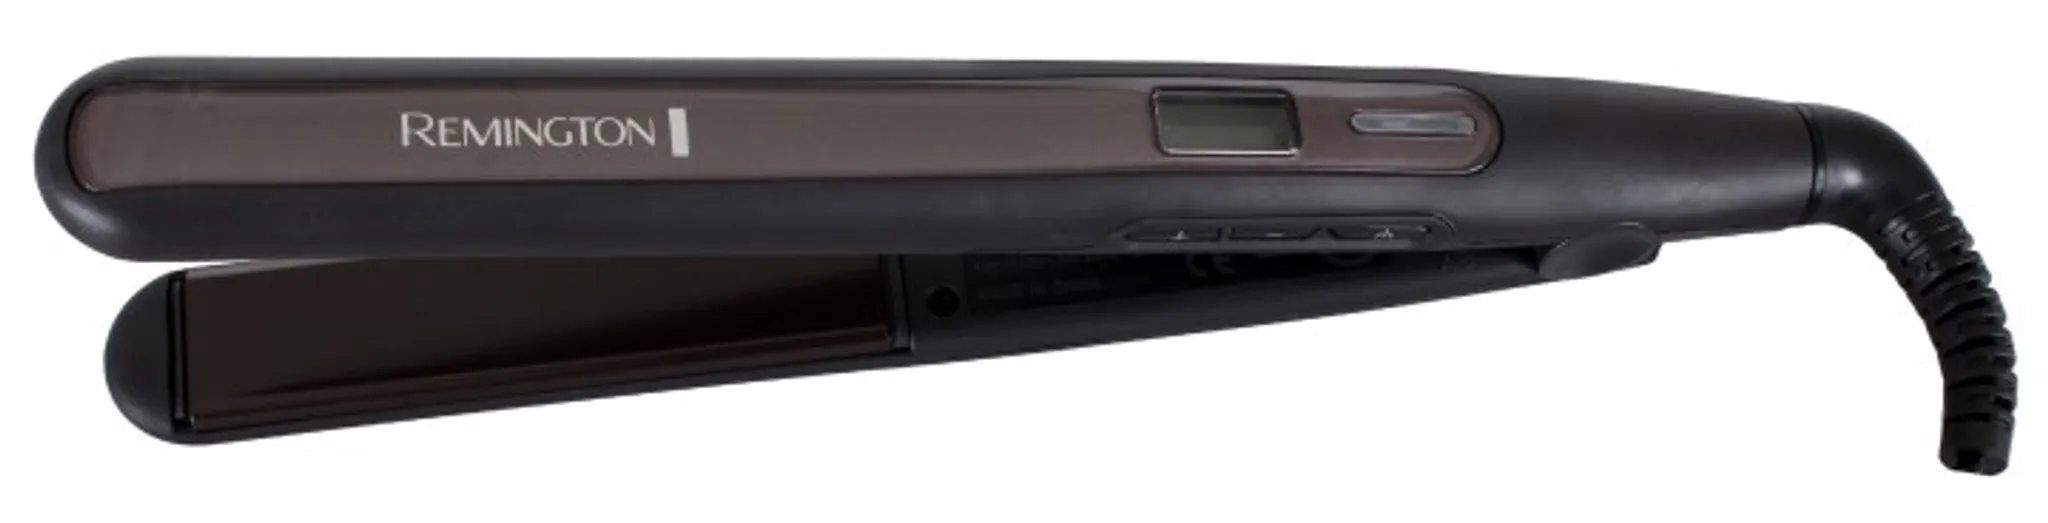 Pro-Sleek Curl S6505 Haarglätter & Remington